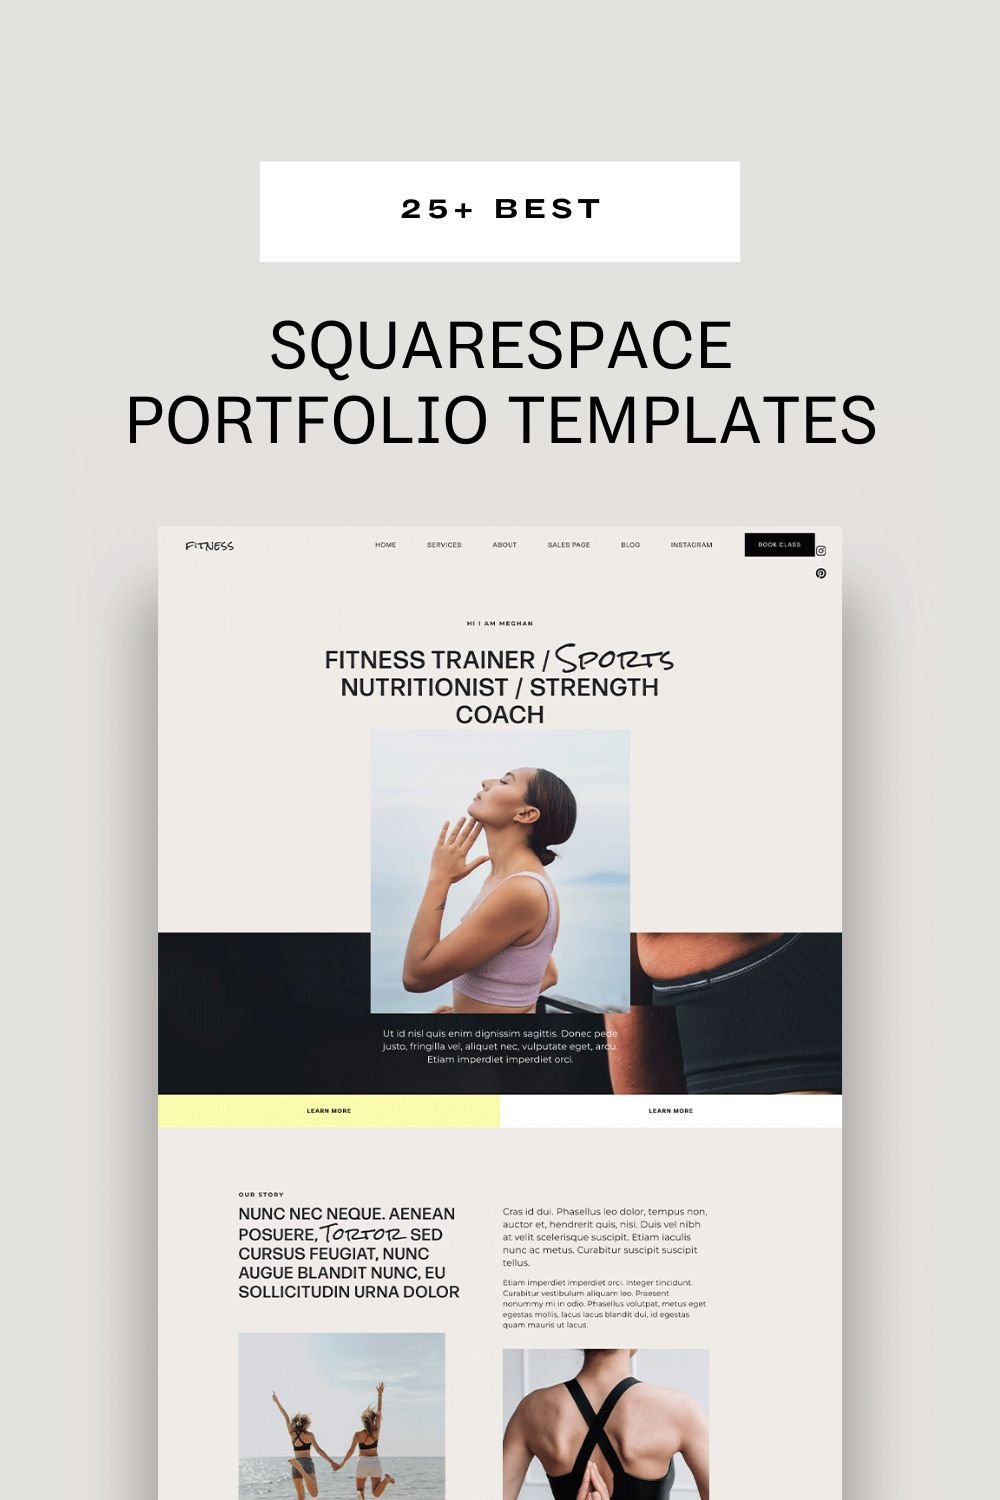 Best Squarespace Portfolio Templates